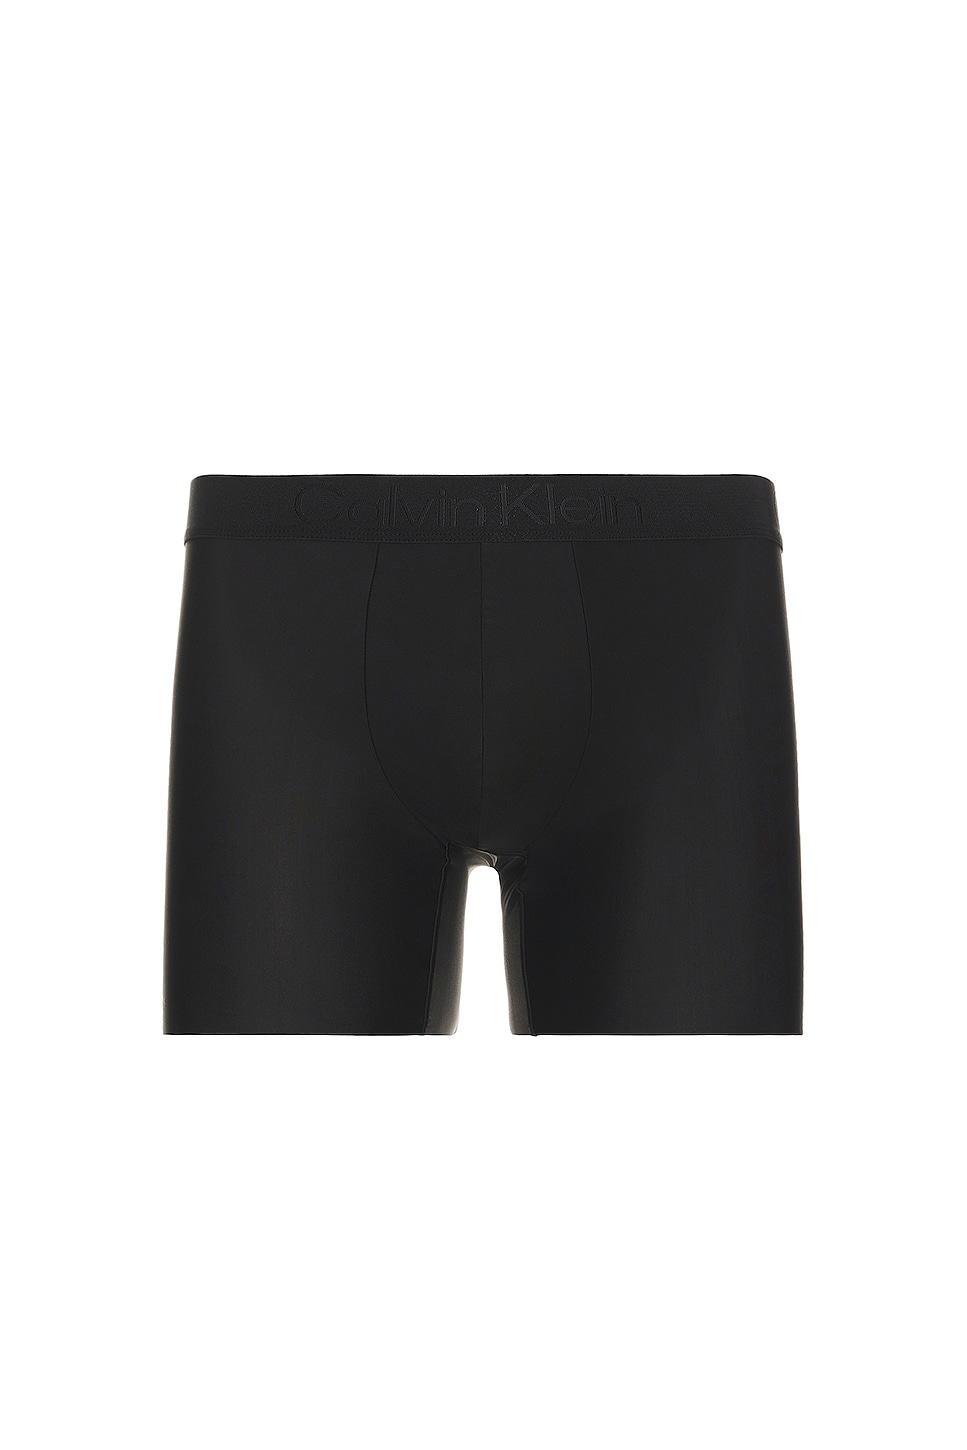 Calvin Klein Underwear Premium CK Black Micro Boxer Brief in Black | REVOLVE